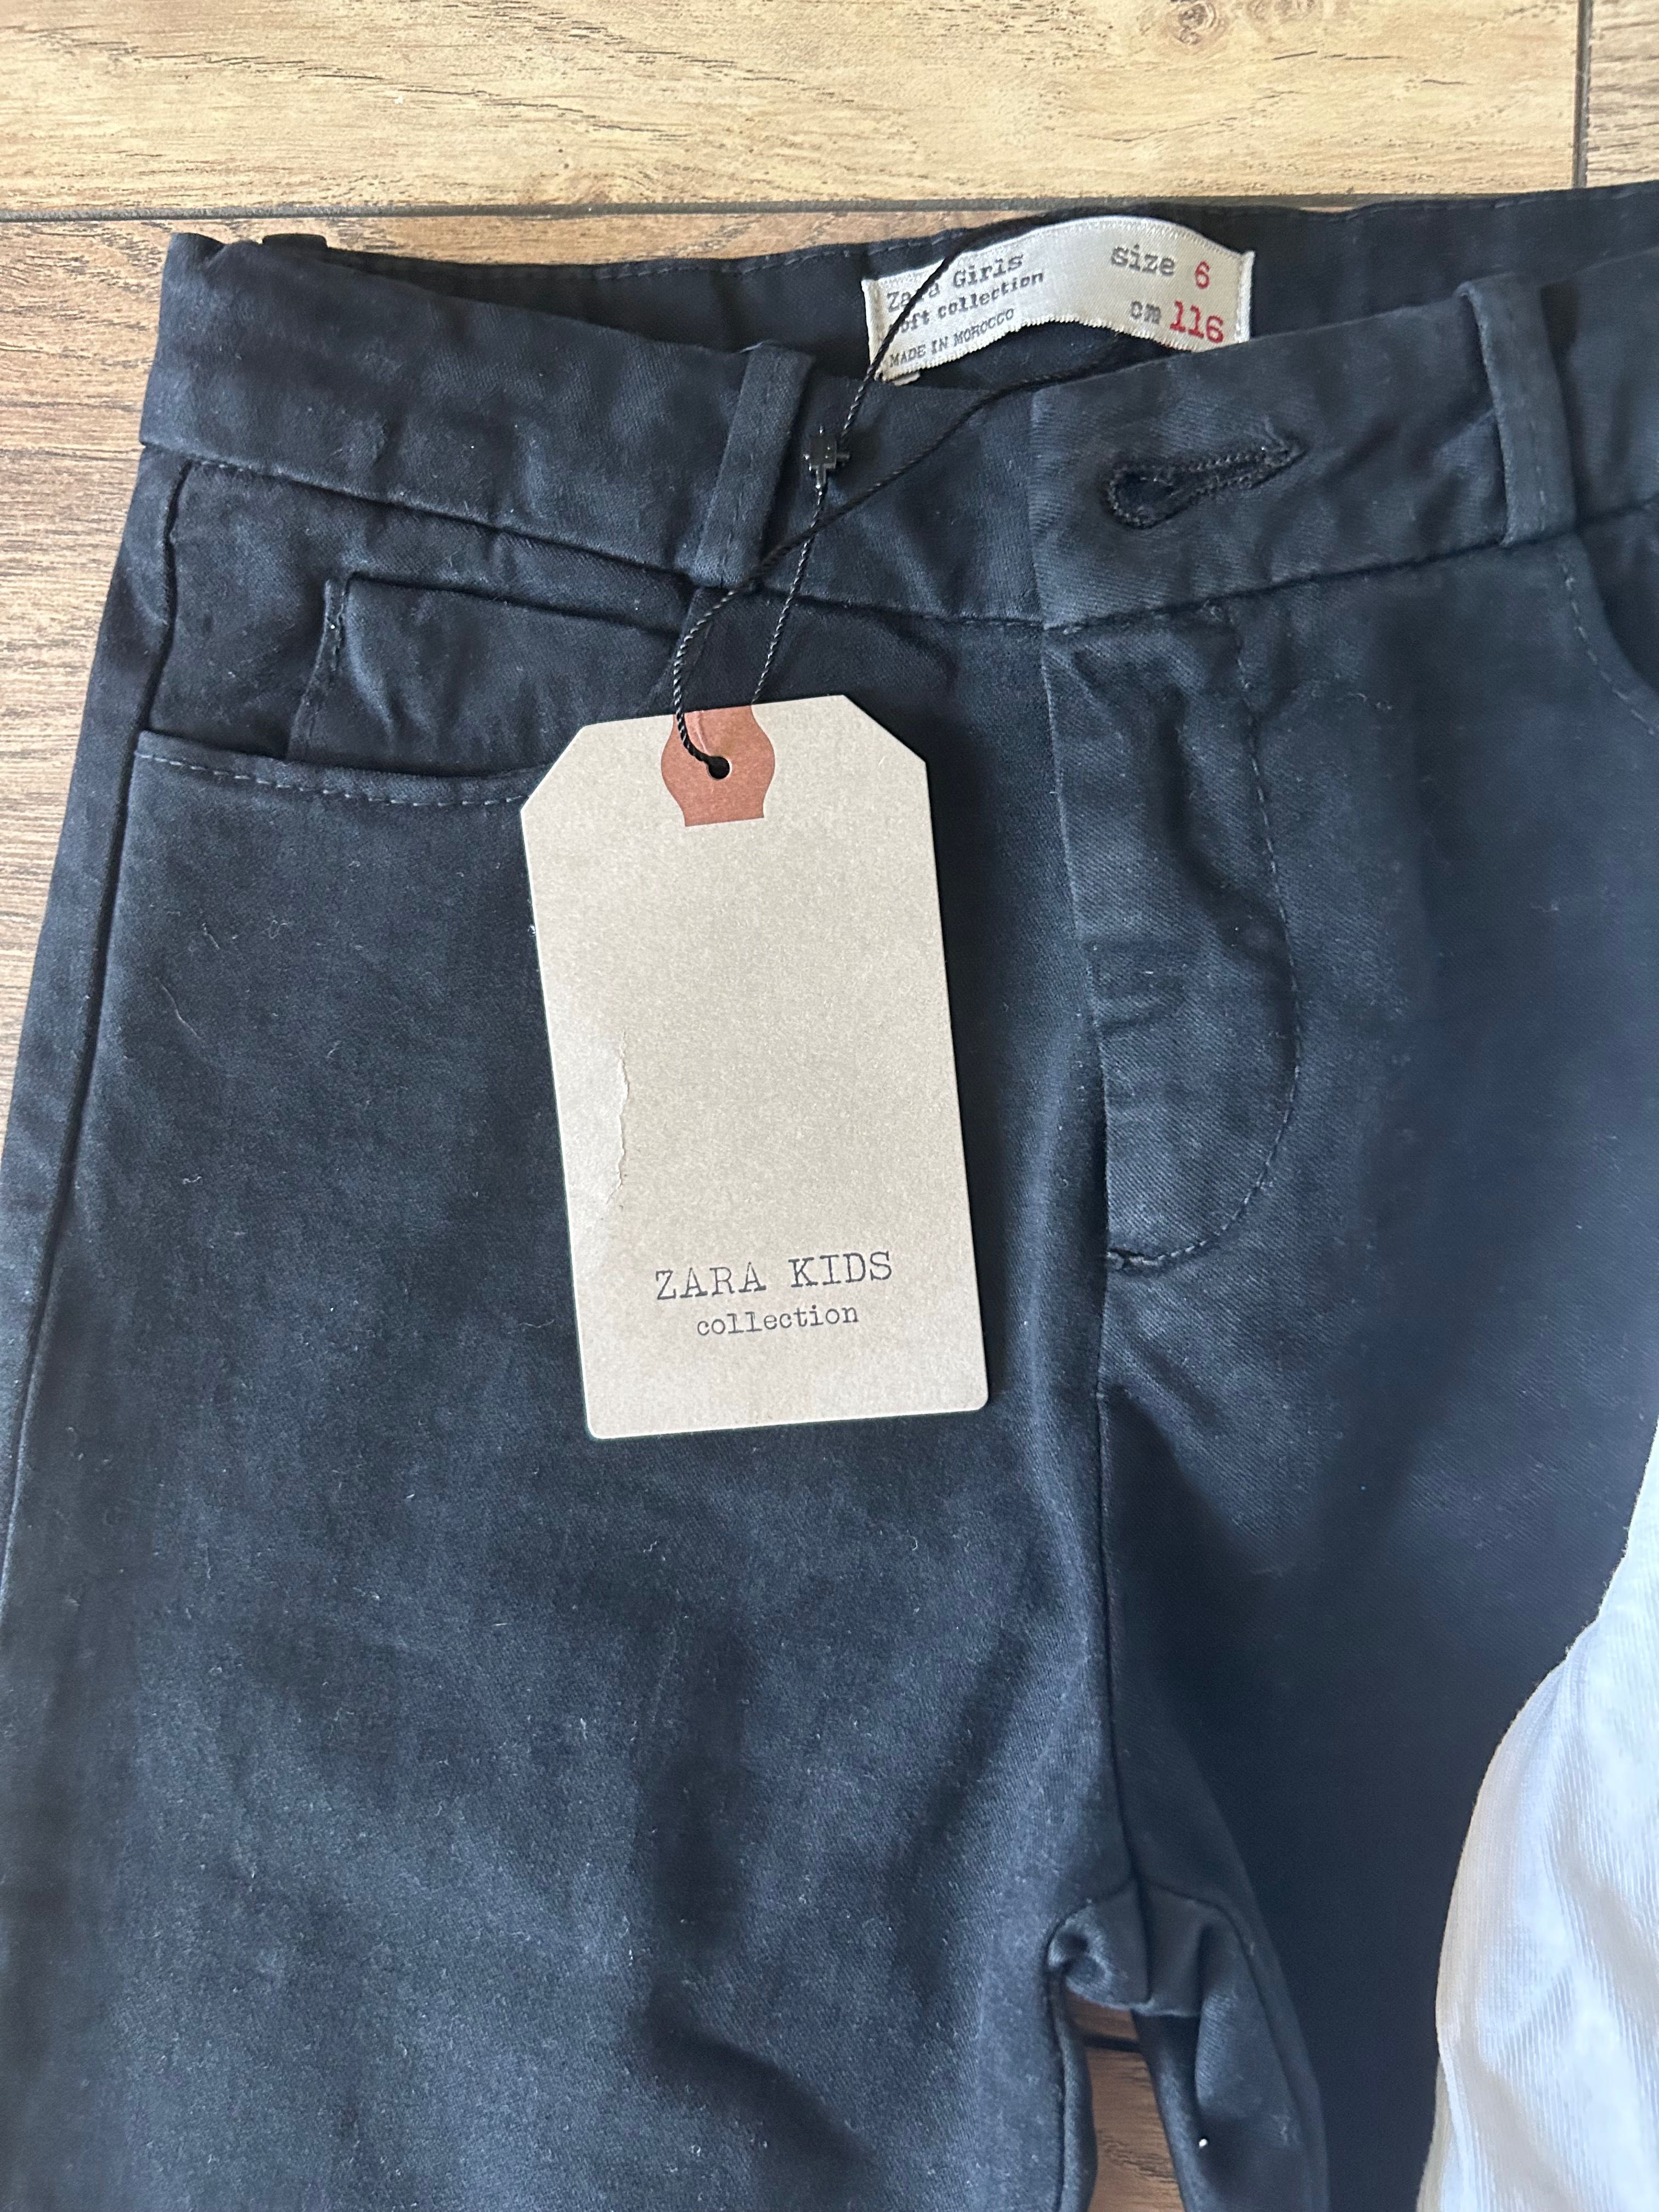 Панталон на Zara и блуза на Guess 116-122см